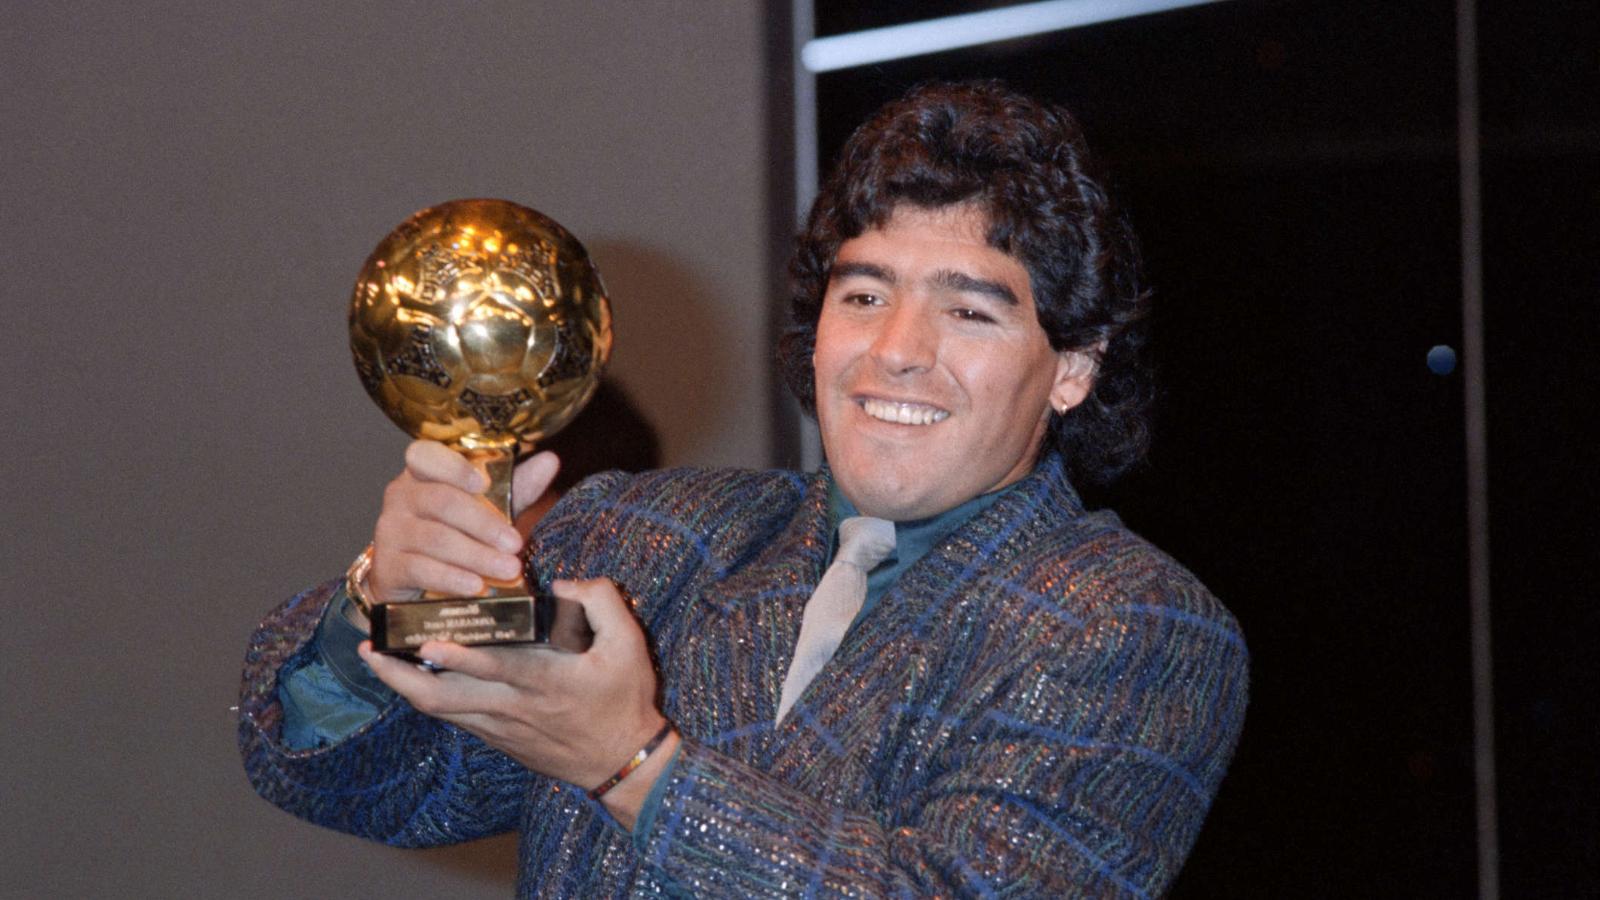 French judiciary bans Maradona's Ballon d'Or auction